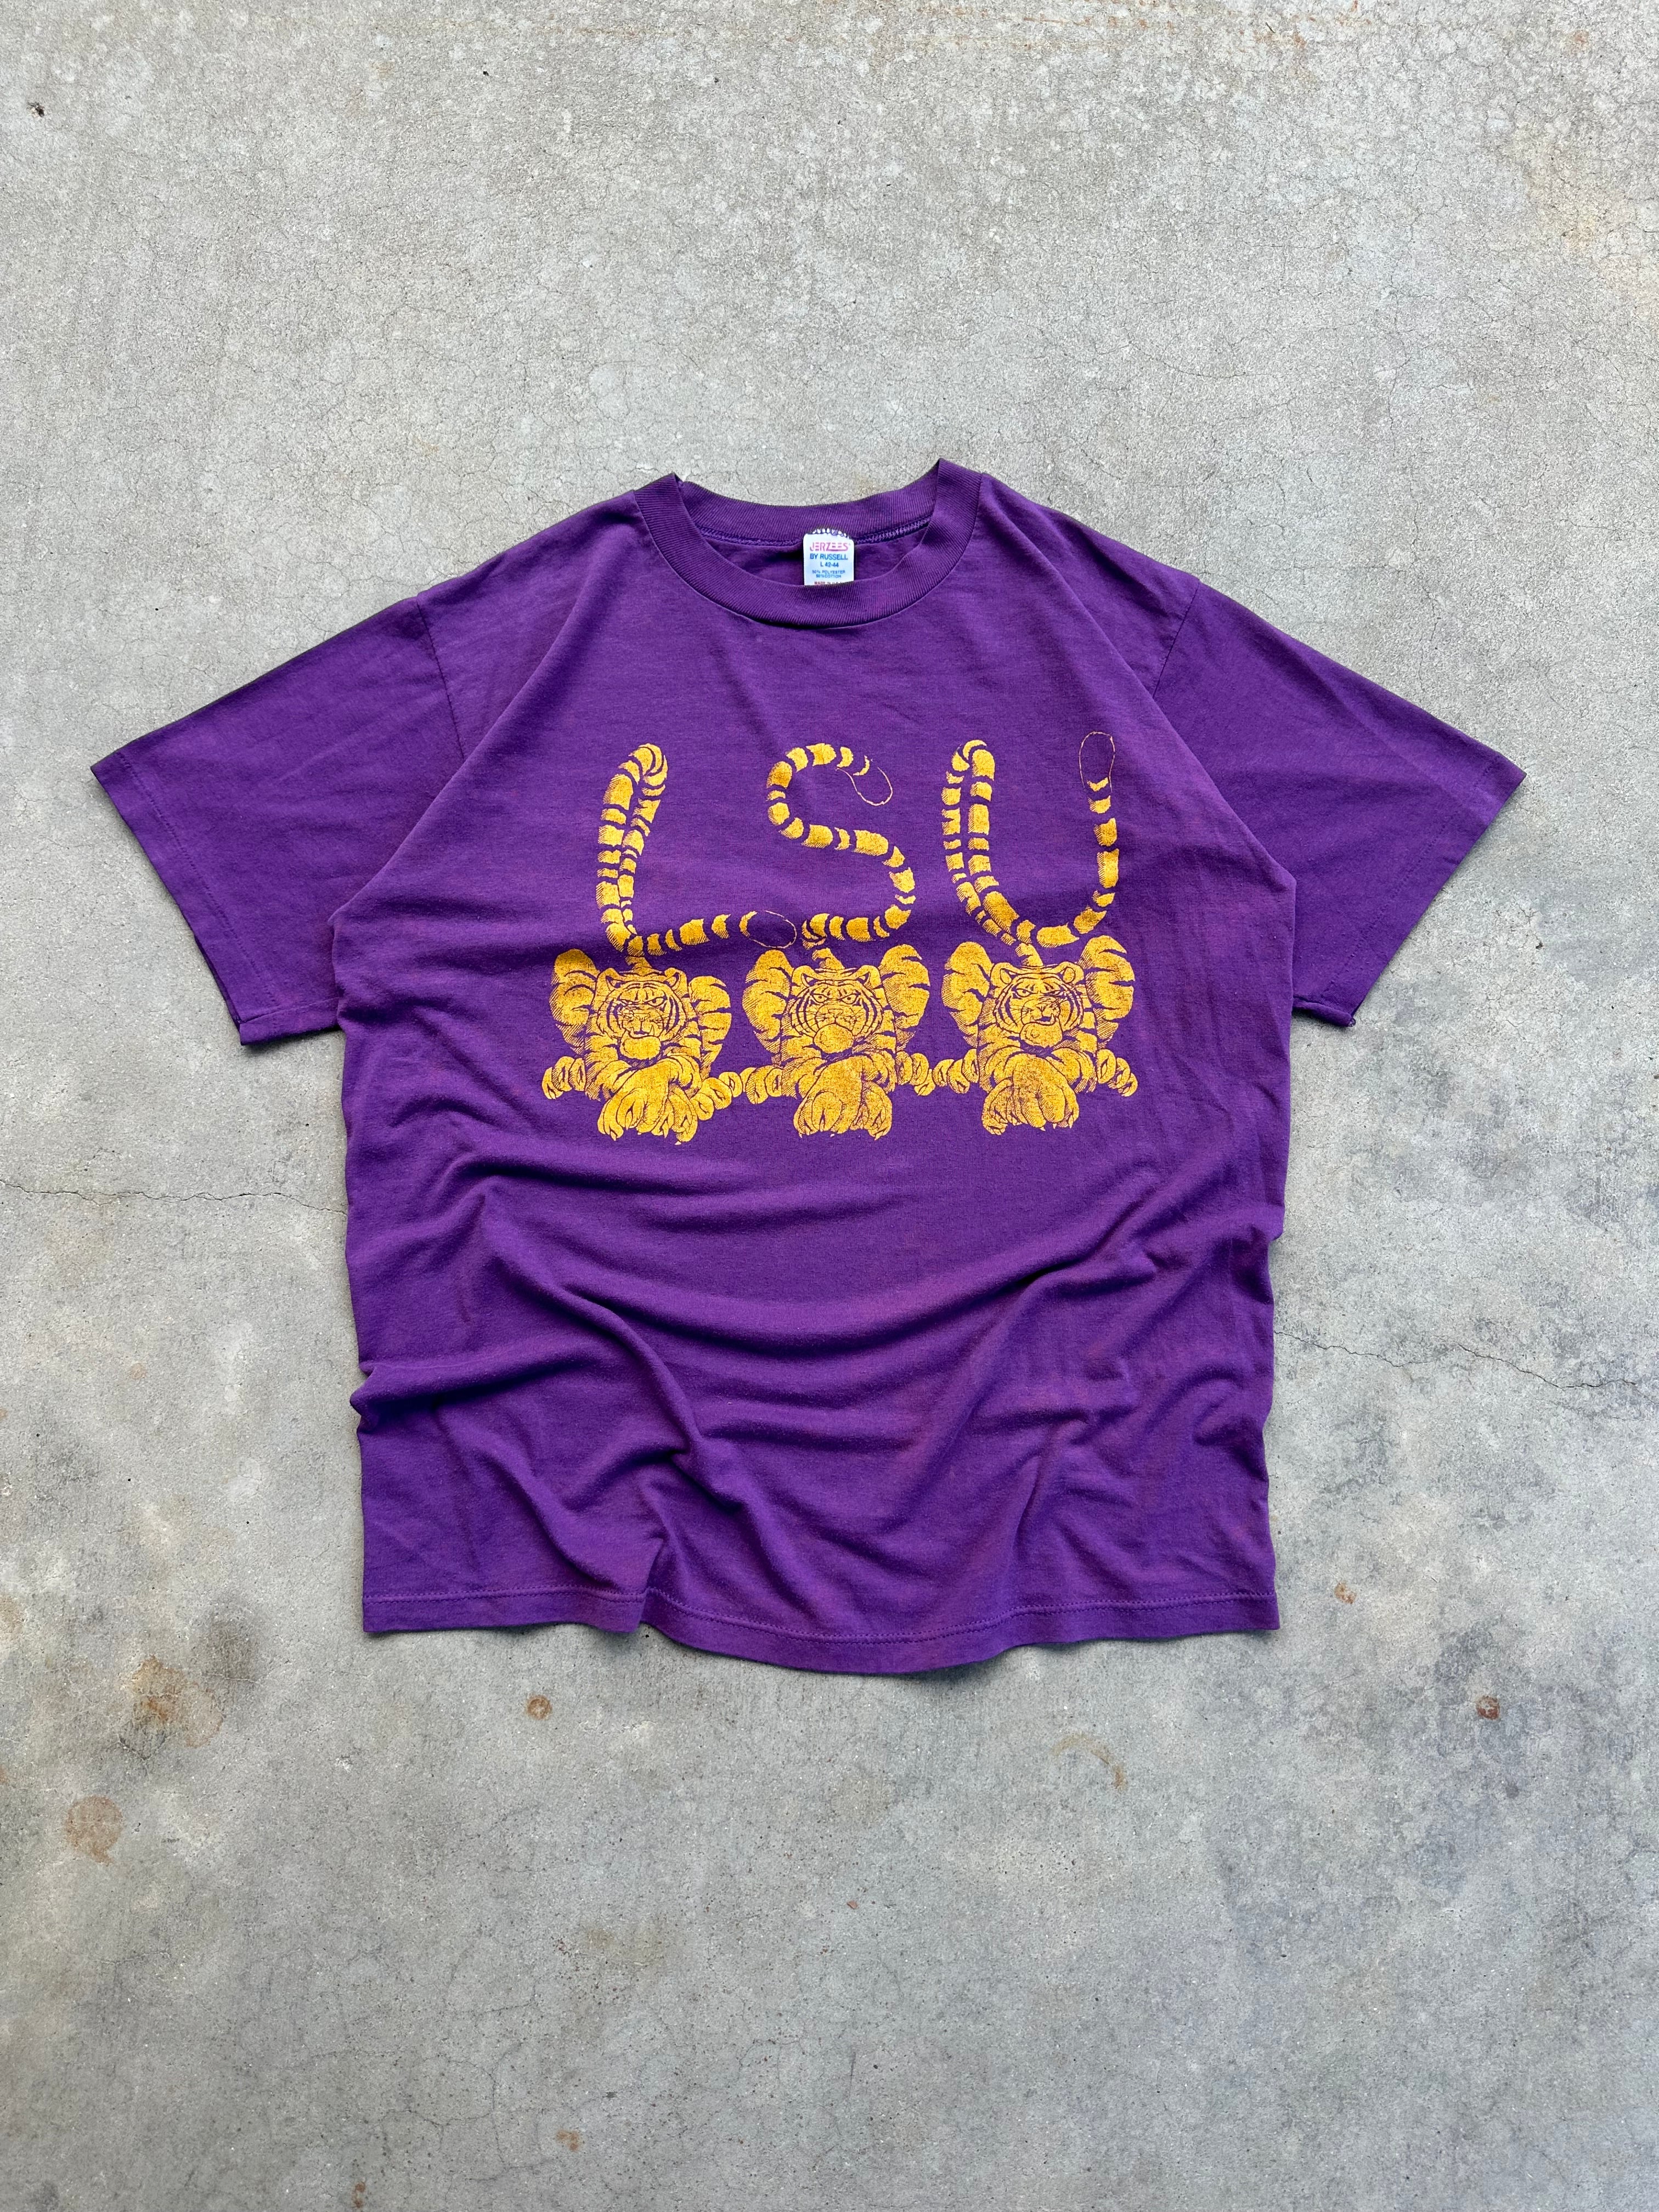 1980s LSU Tigers T-Shirt (M/L)